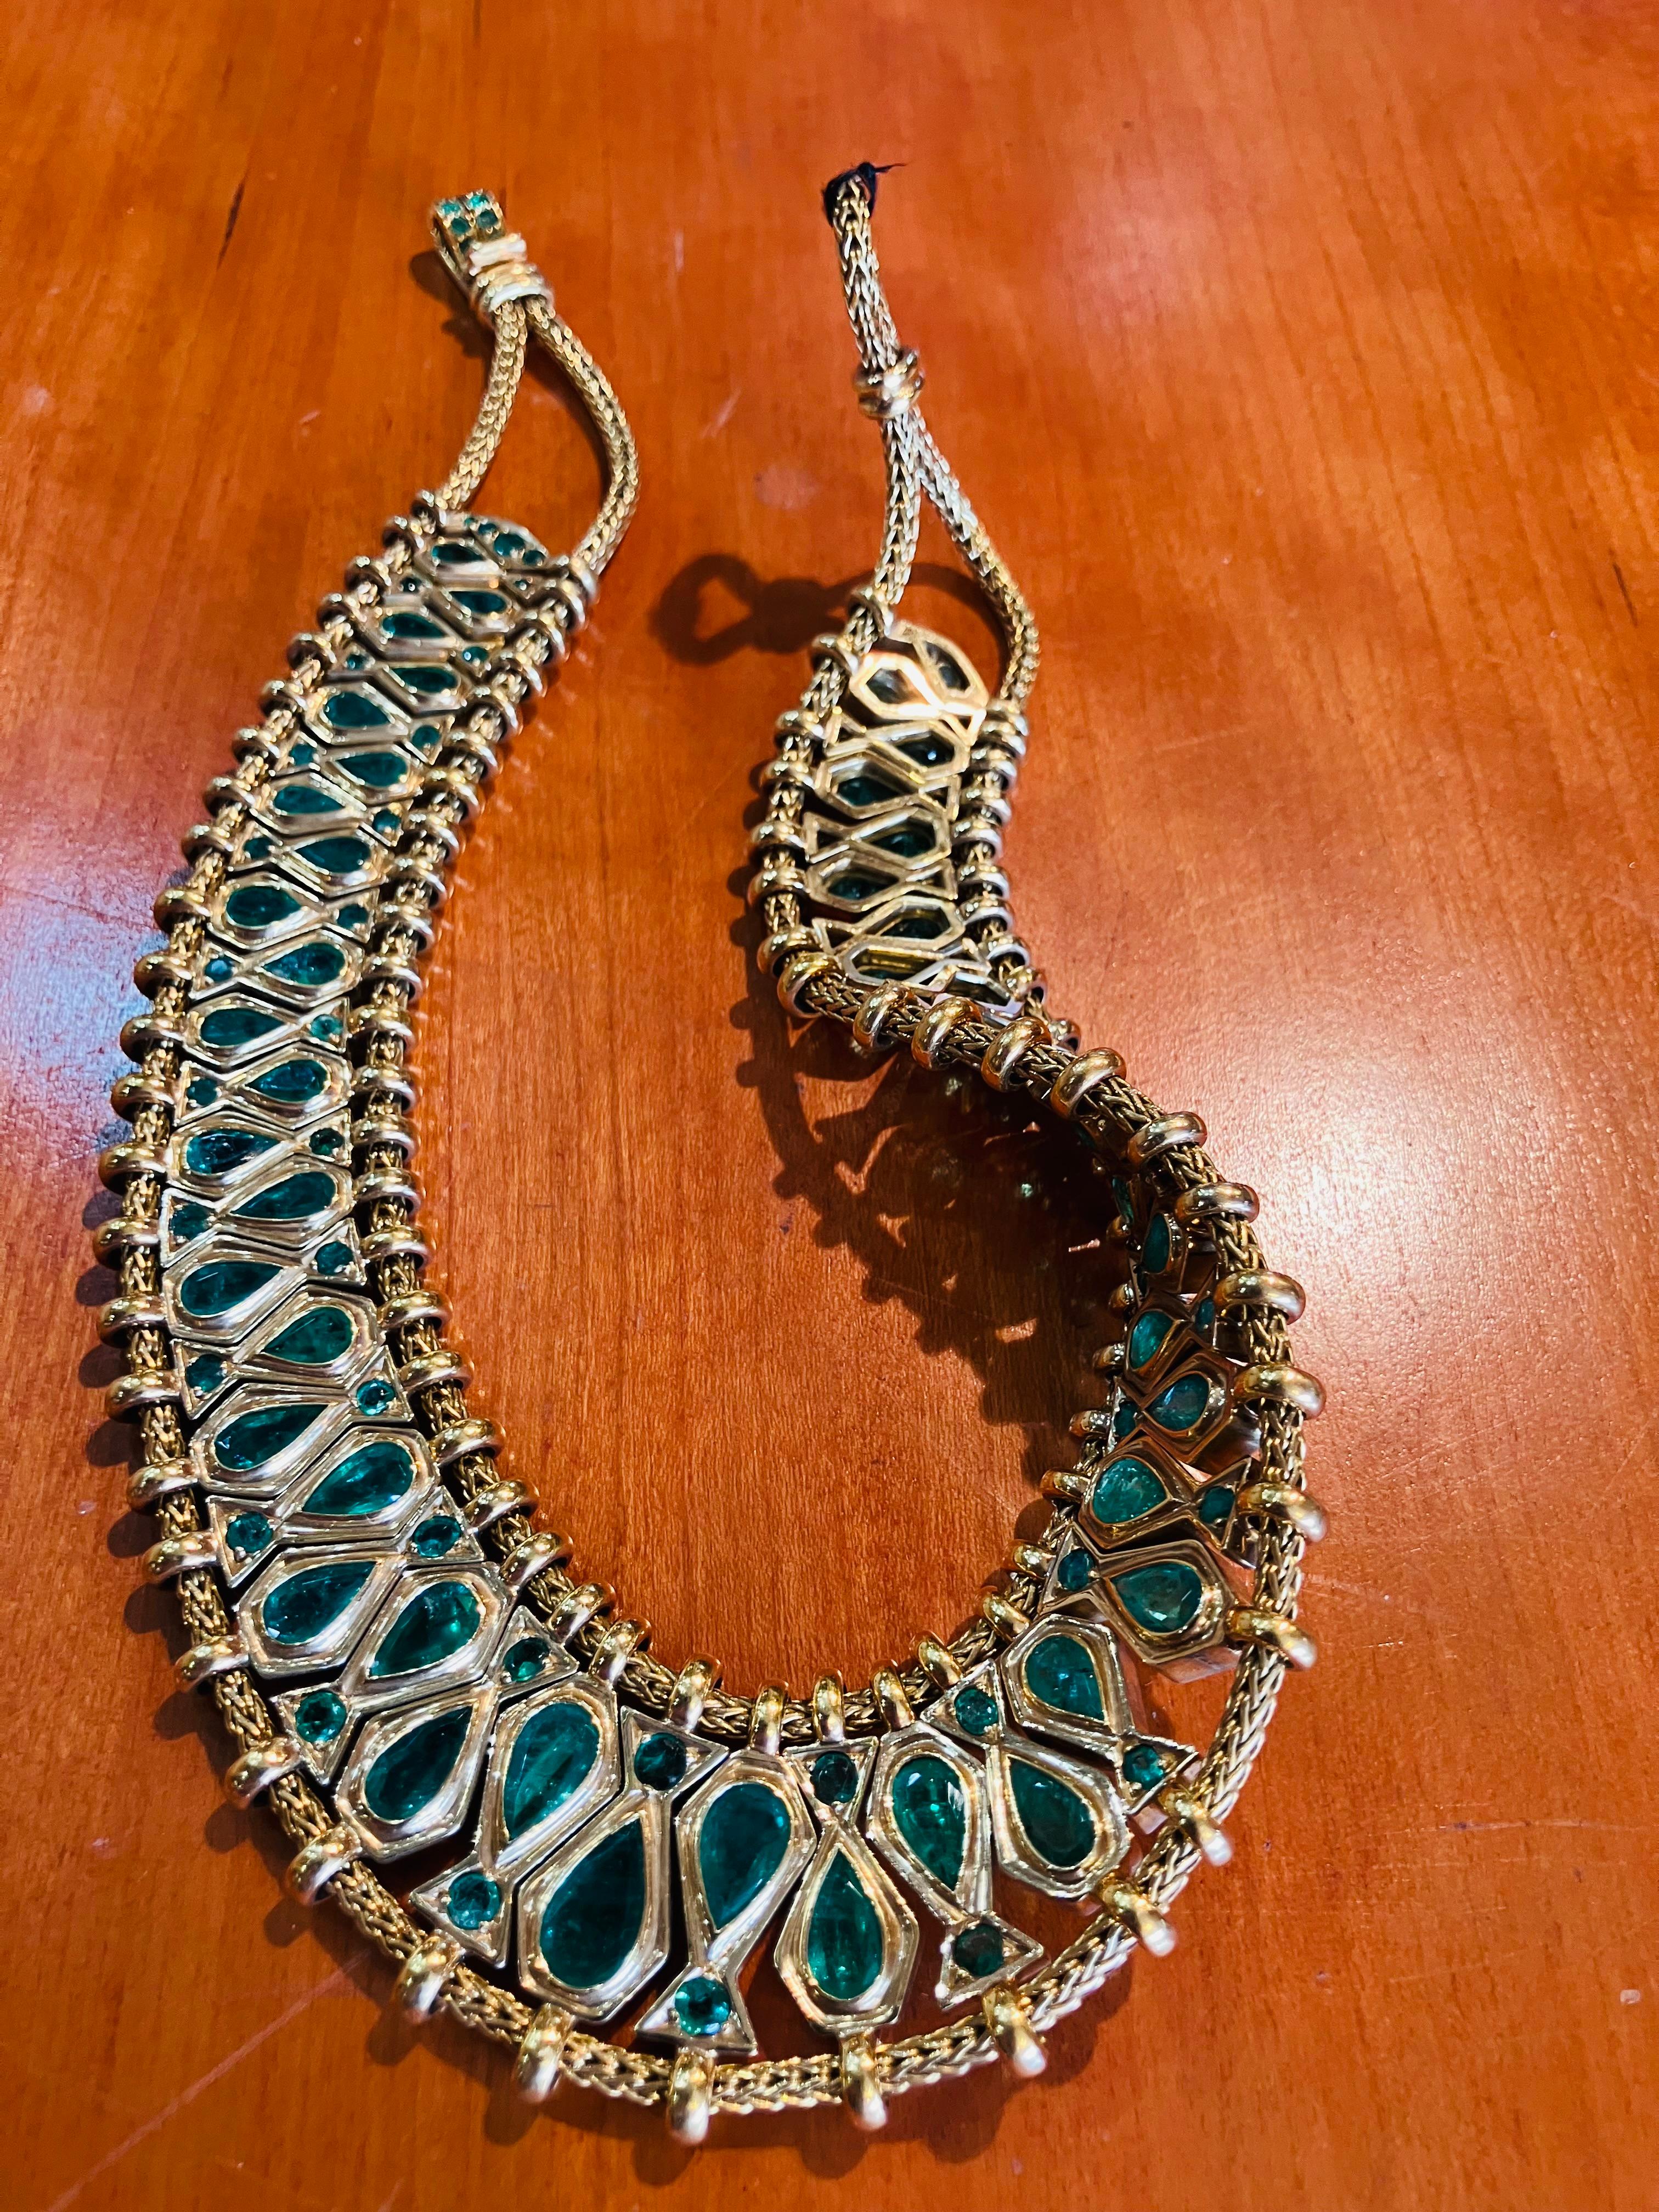 Wunderschönes Einzelstück René Boivin Kolumbianischer Smaragd und Gold Halskette. Indisch inspiriertes Design mit Zertifizierung von René Boivin